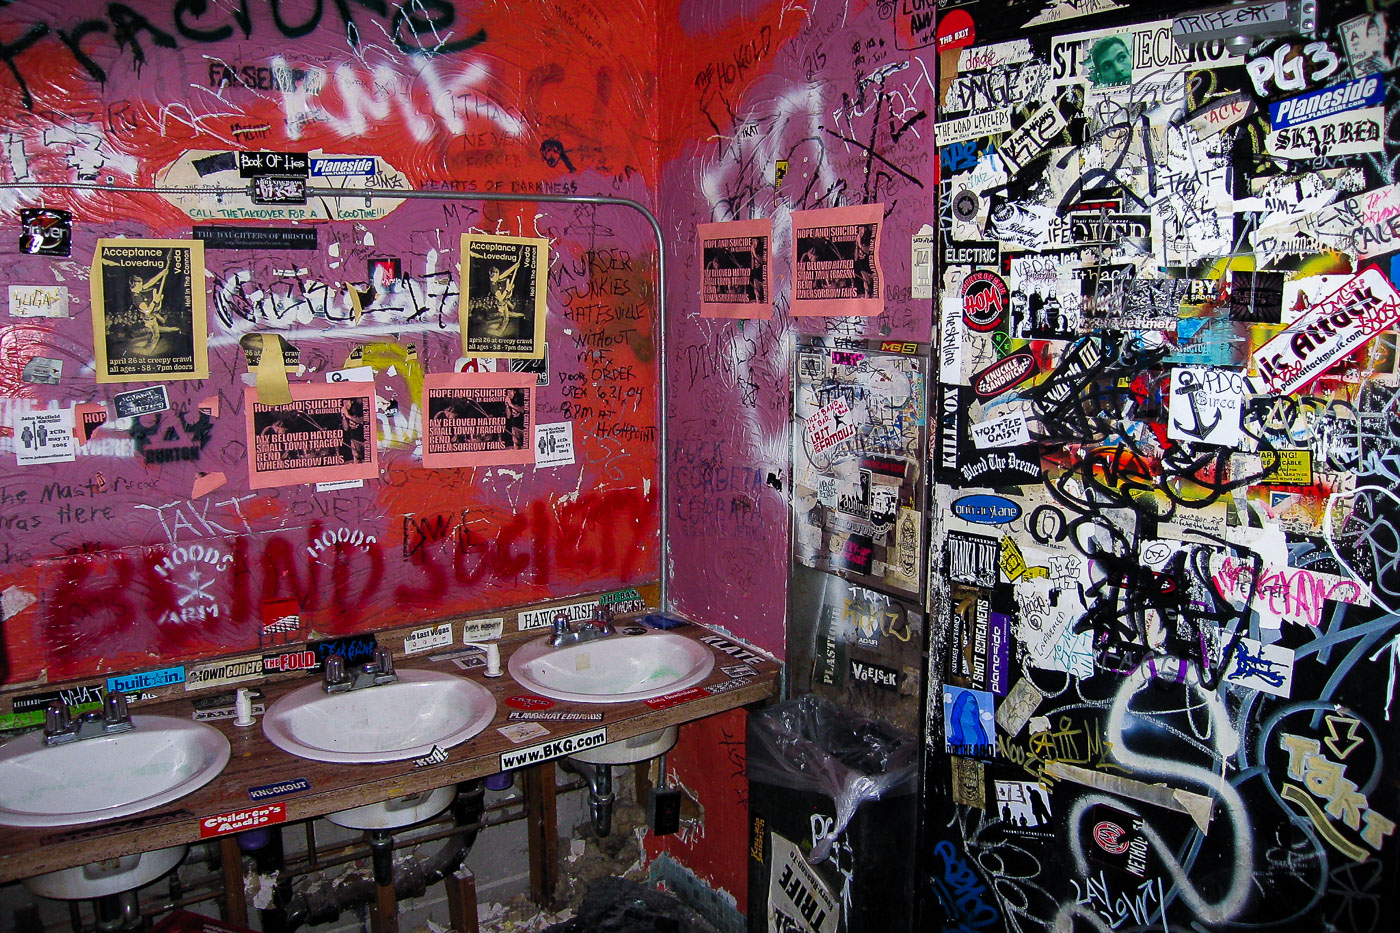 Creepy Crawl club bathroom with stickers